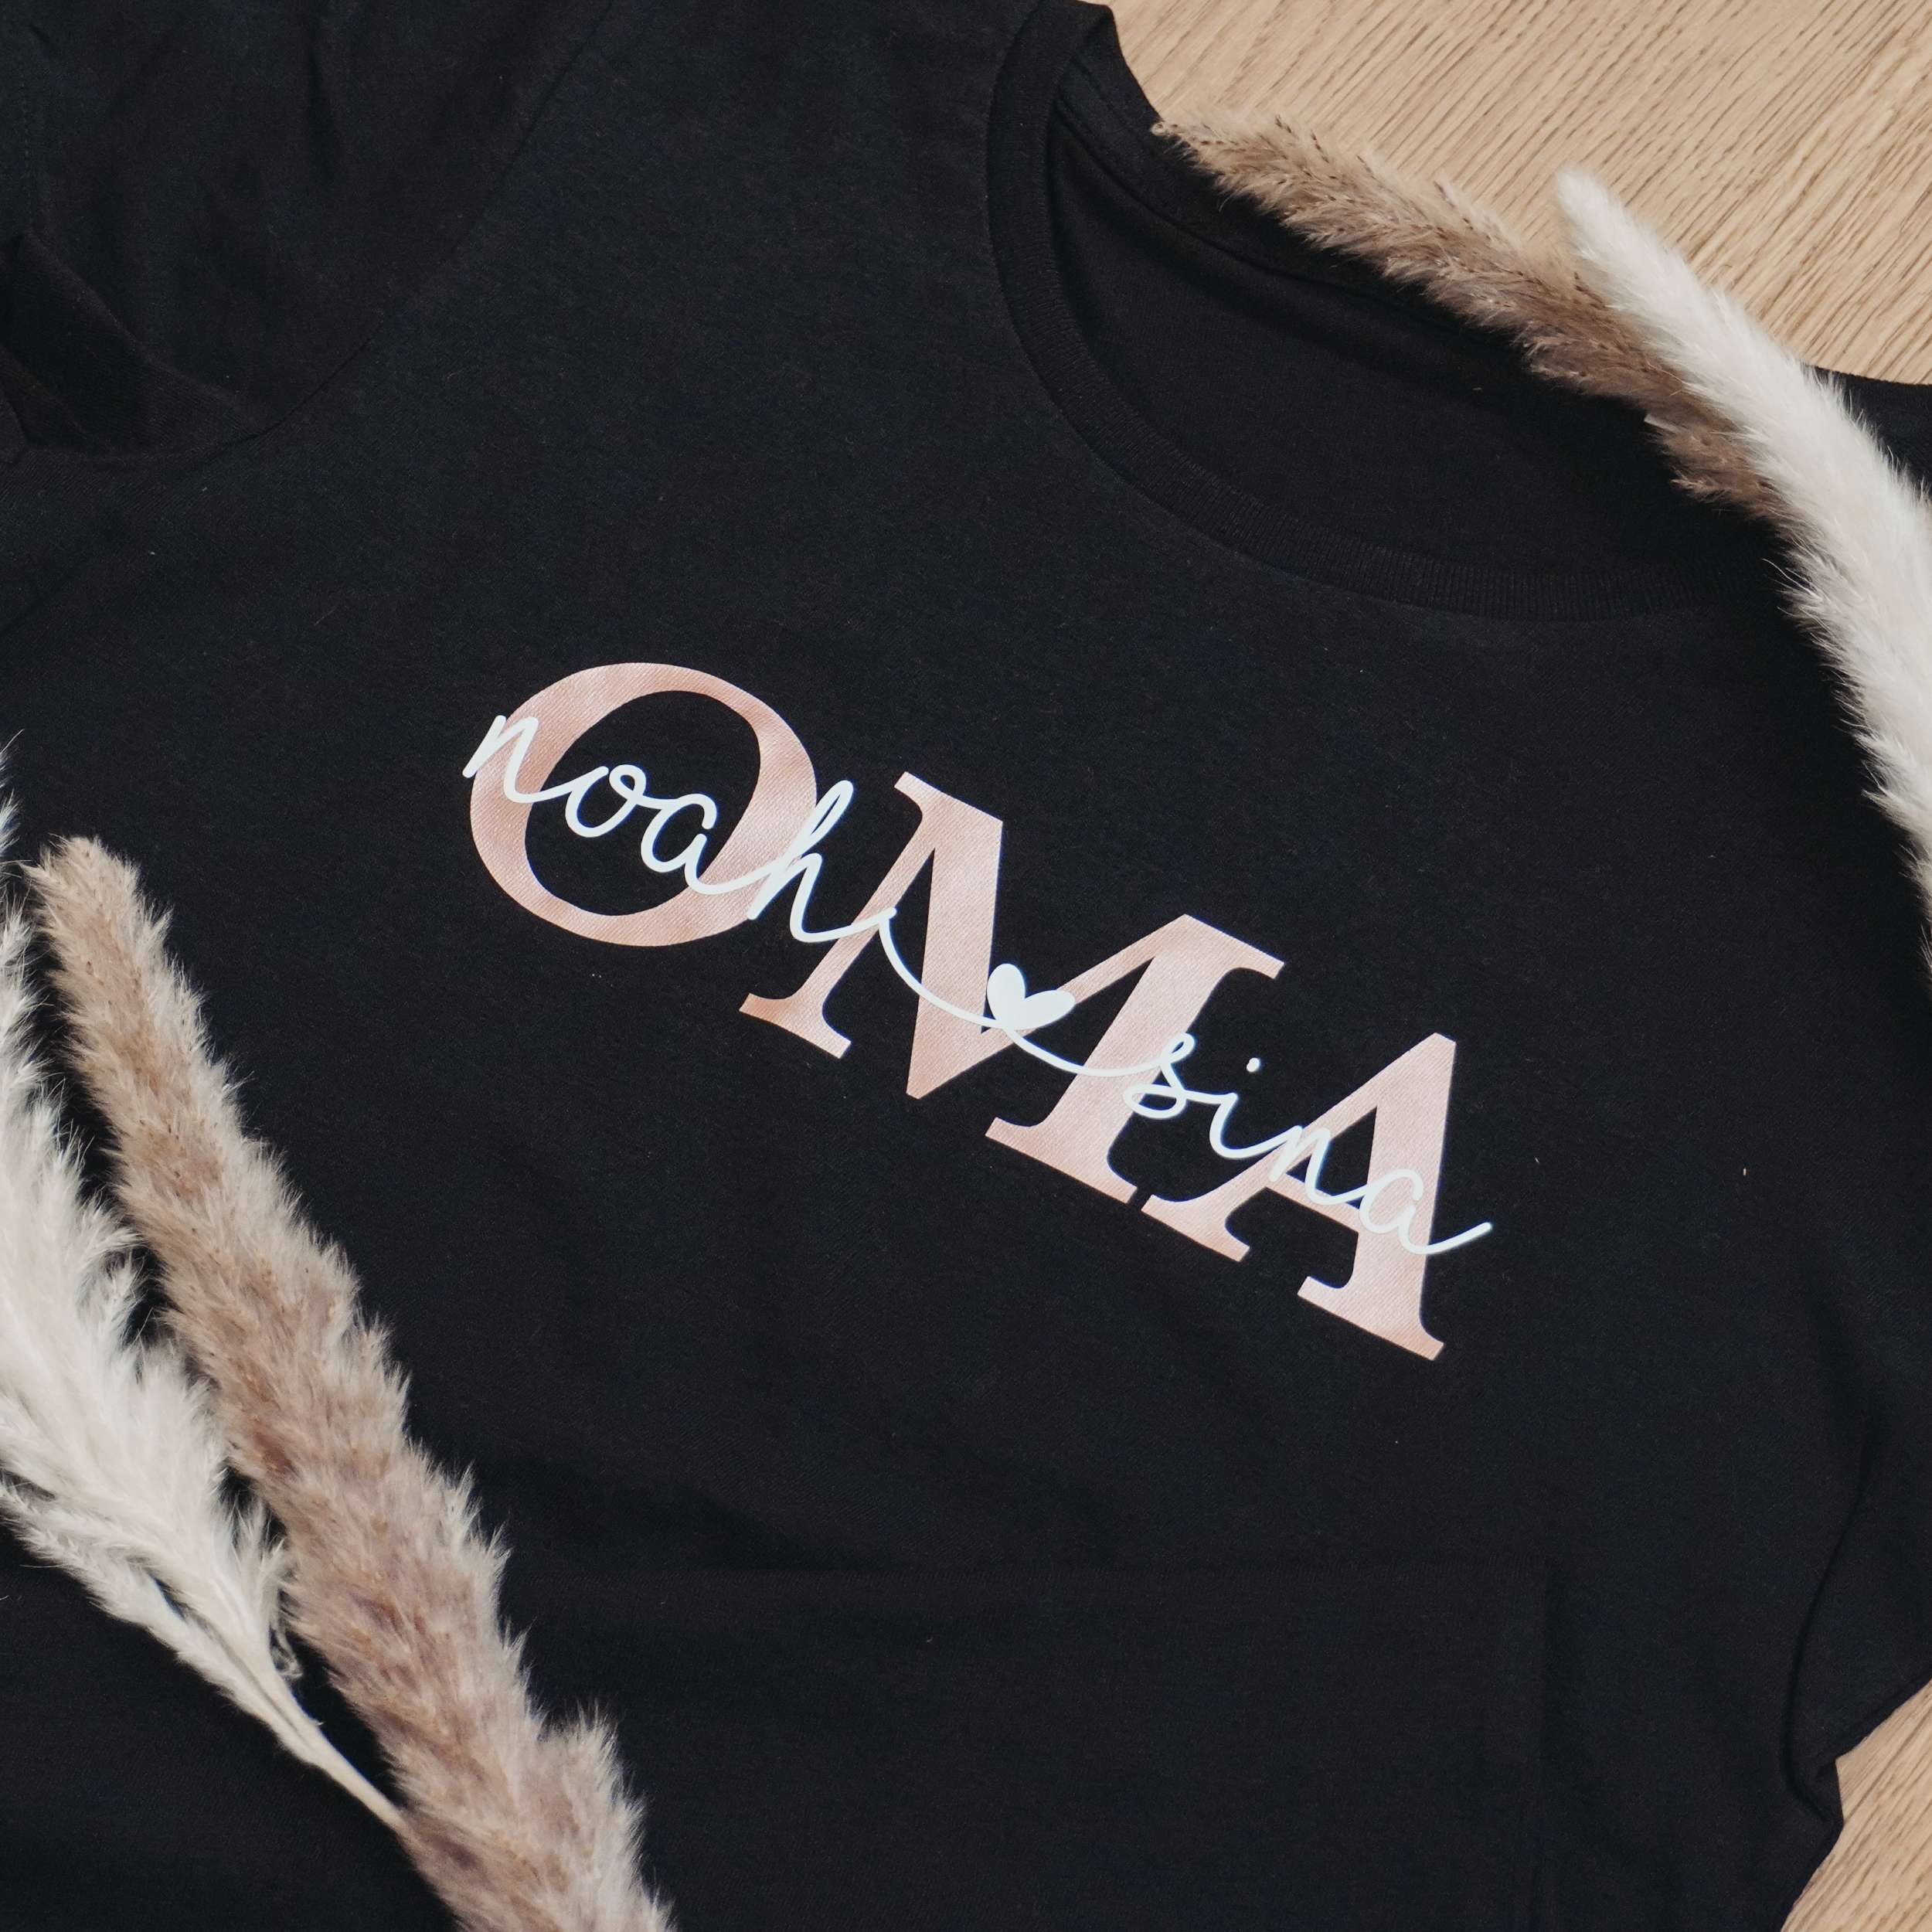 Unser T-Shirt "Oma" personalisiert mit den Namen der Kinder ist das perfekte Geschenk für jede Oma!